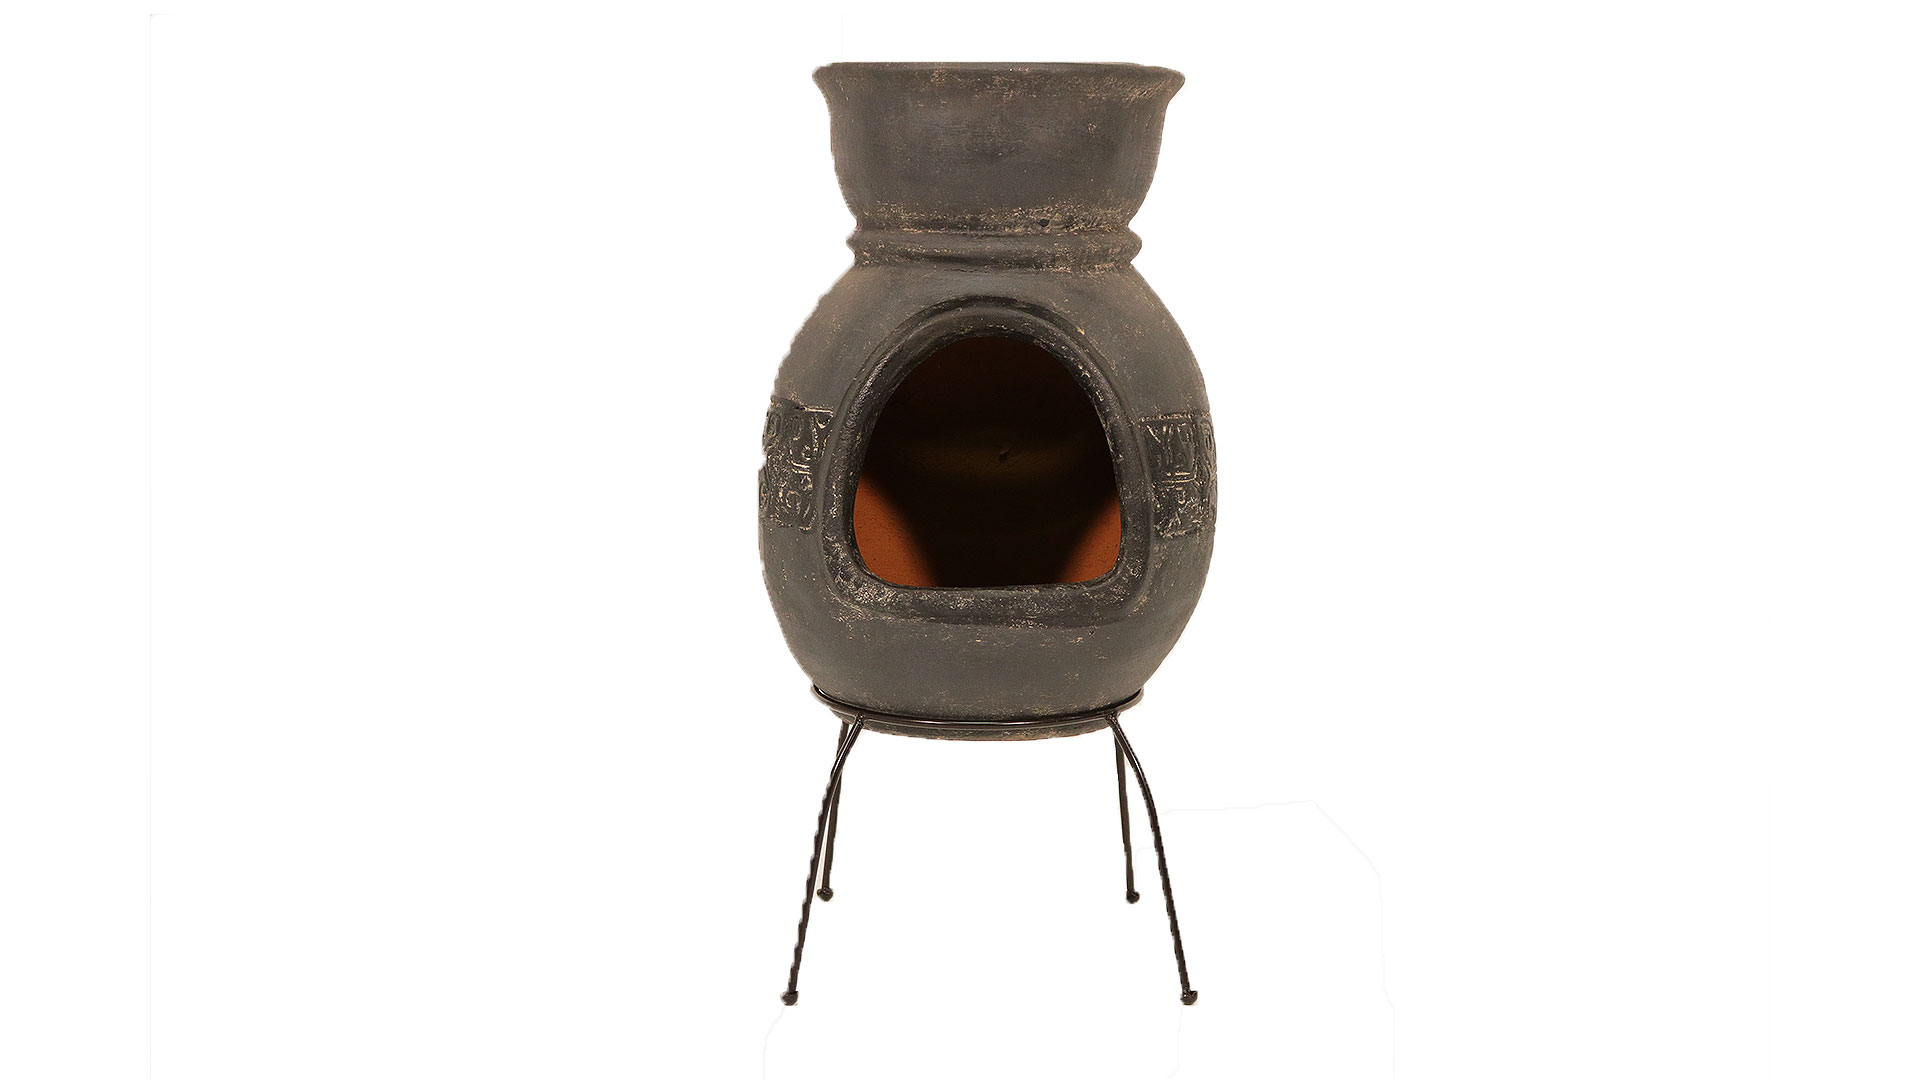 メキシコ製の暖炉型チムニー